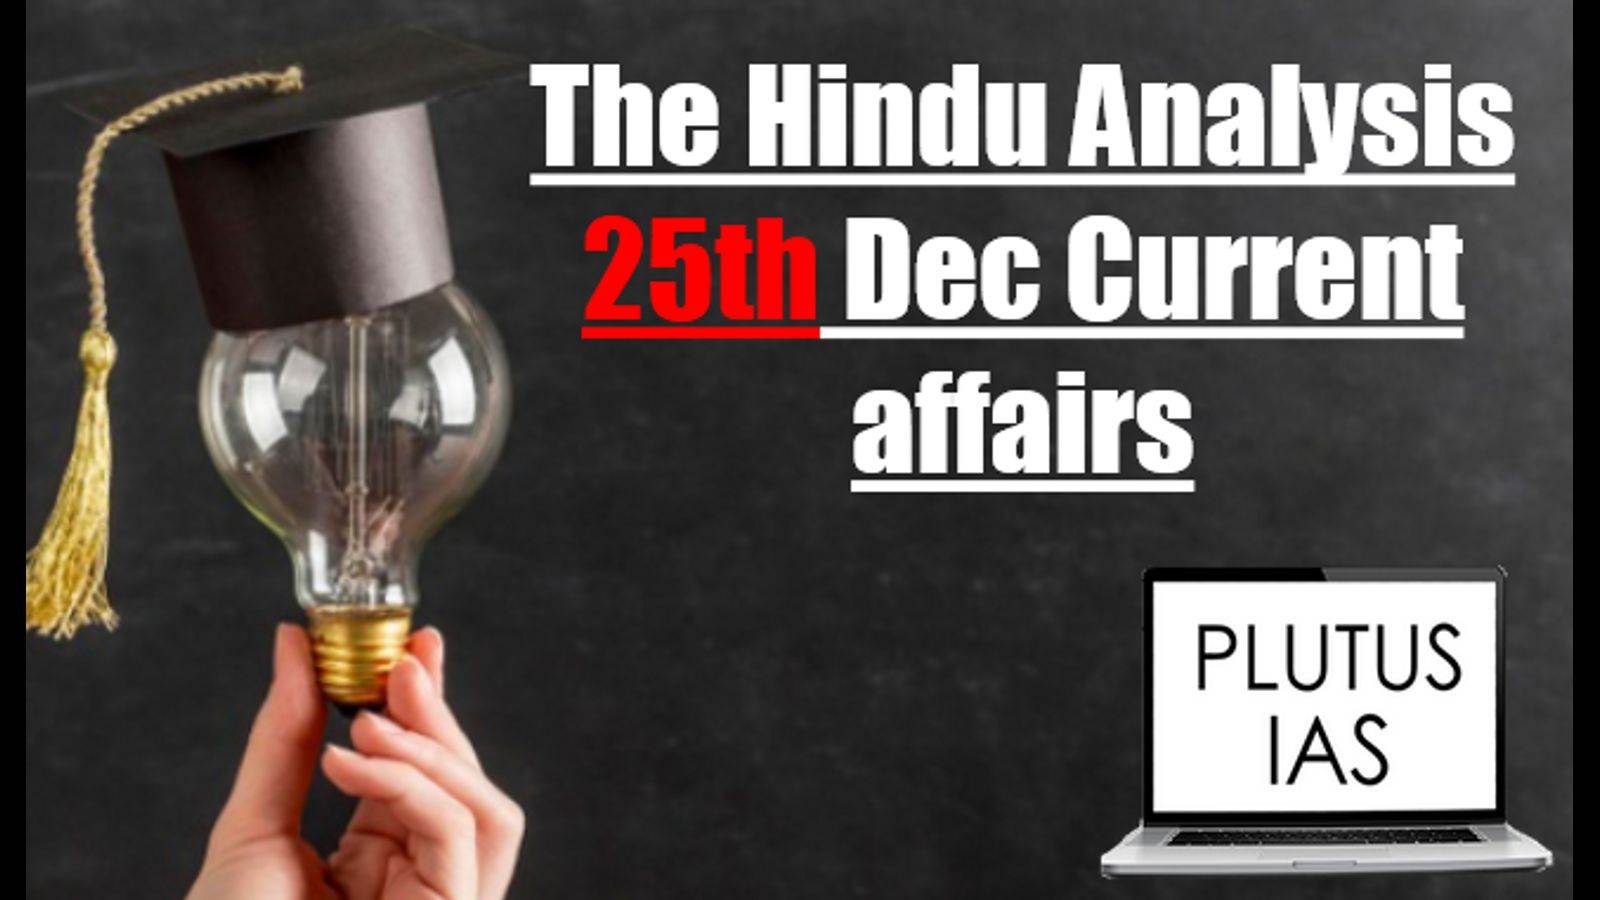 The Hindu Analysis 25 December.PNGg